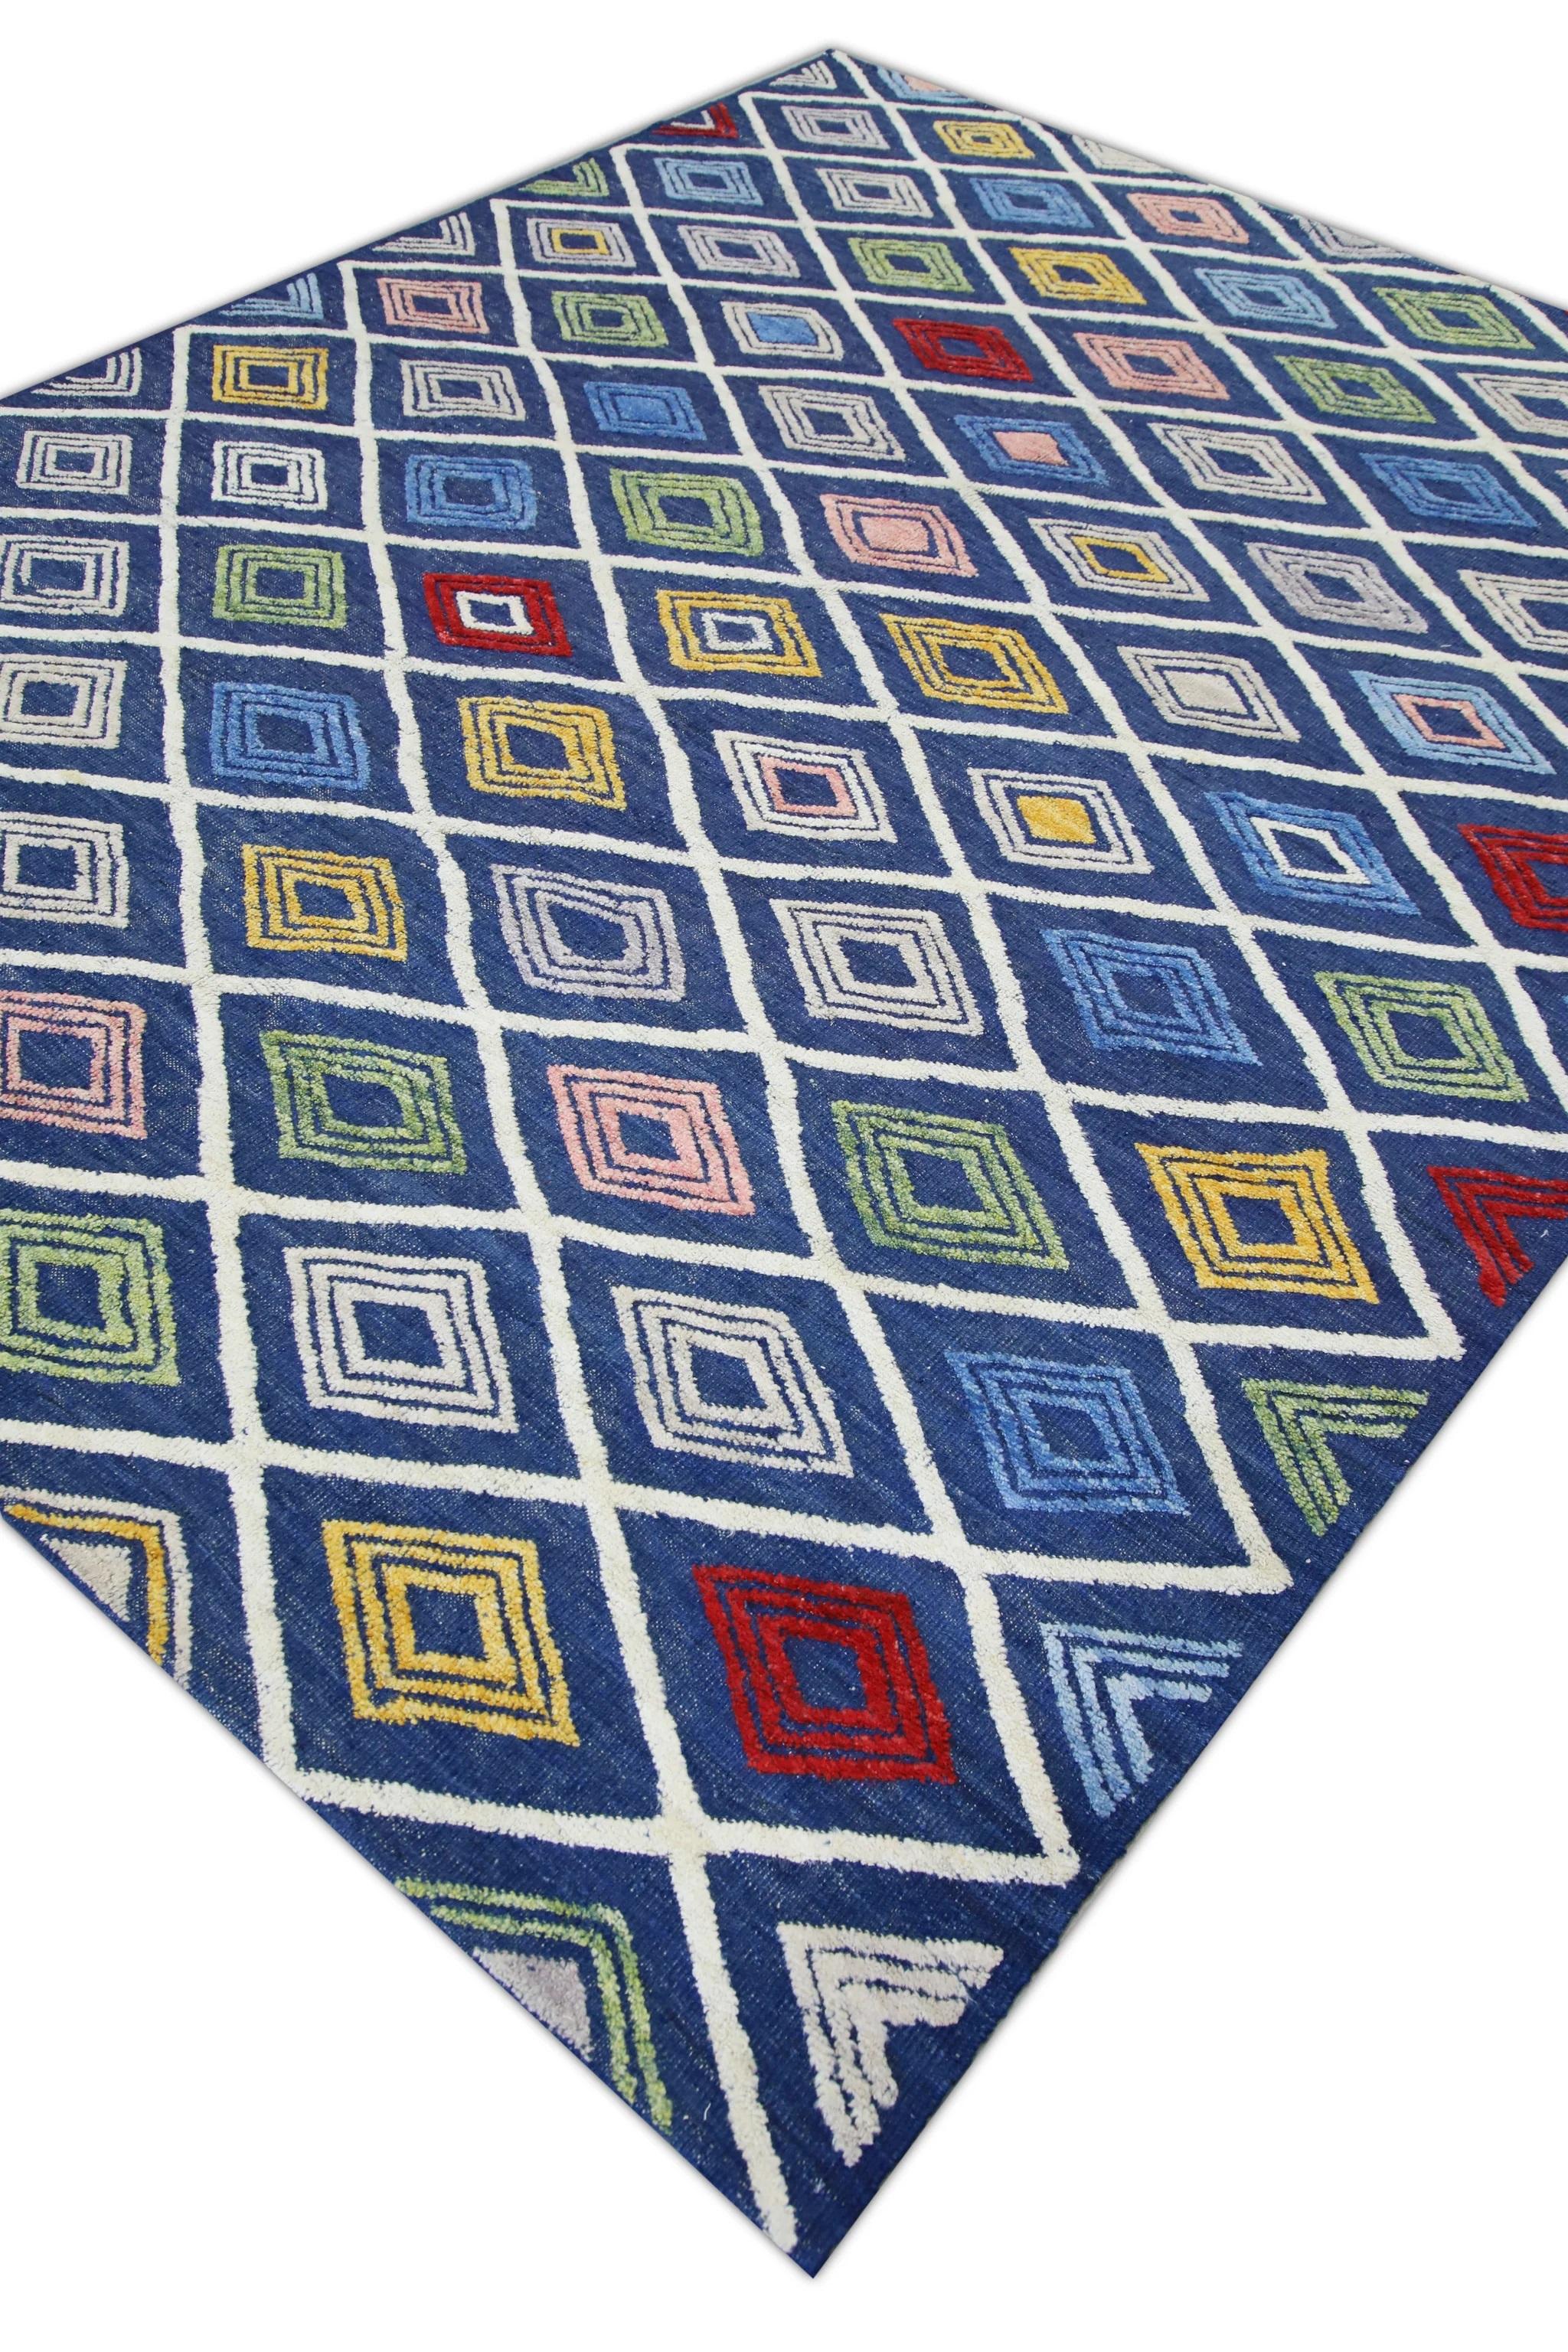 Vegetable Dyed Blue Multicolor Geometric Design Flatweave Handmade Wool Rug 8'5